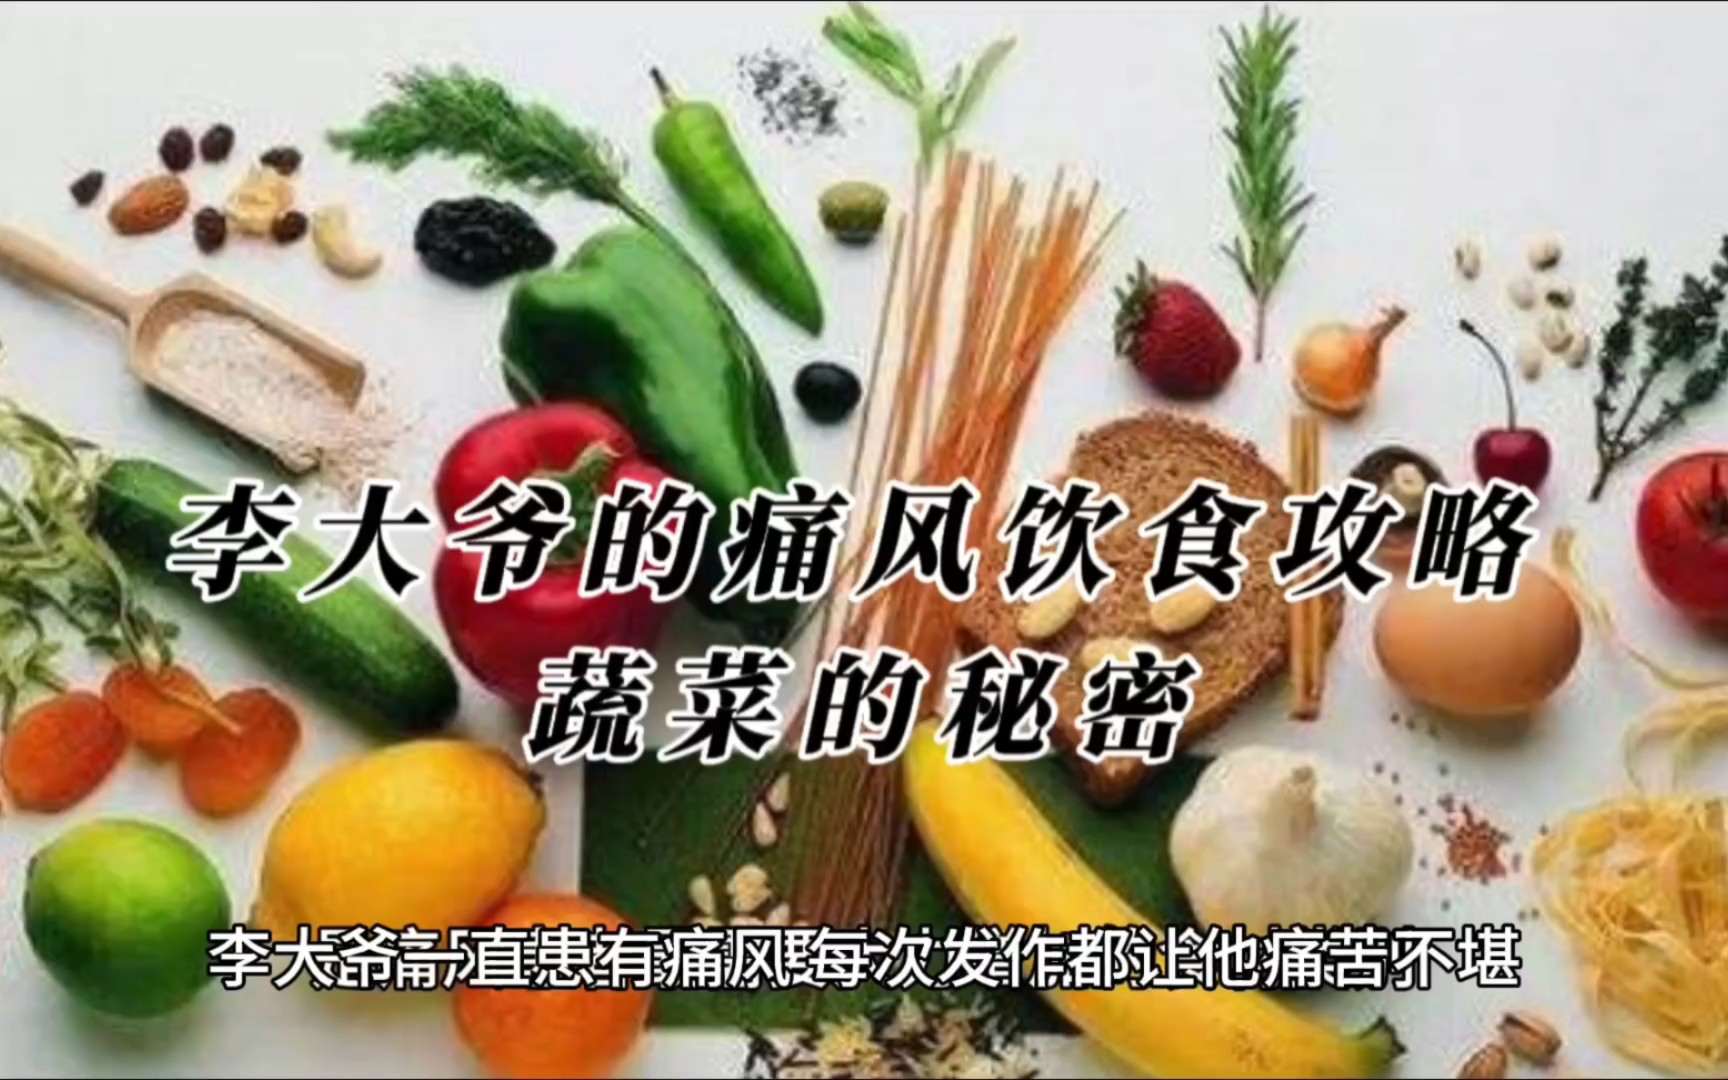 李大爷的痛风饮食攻略:蔬菜的秘密